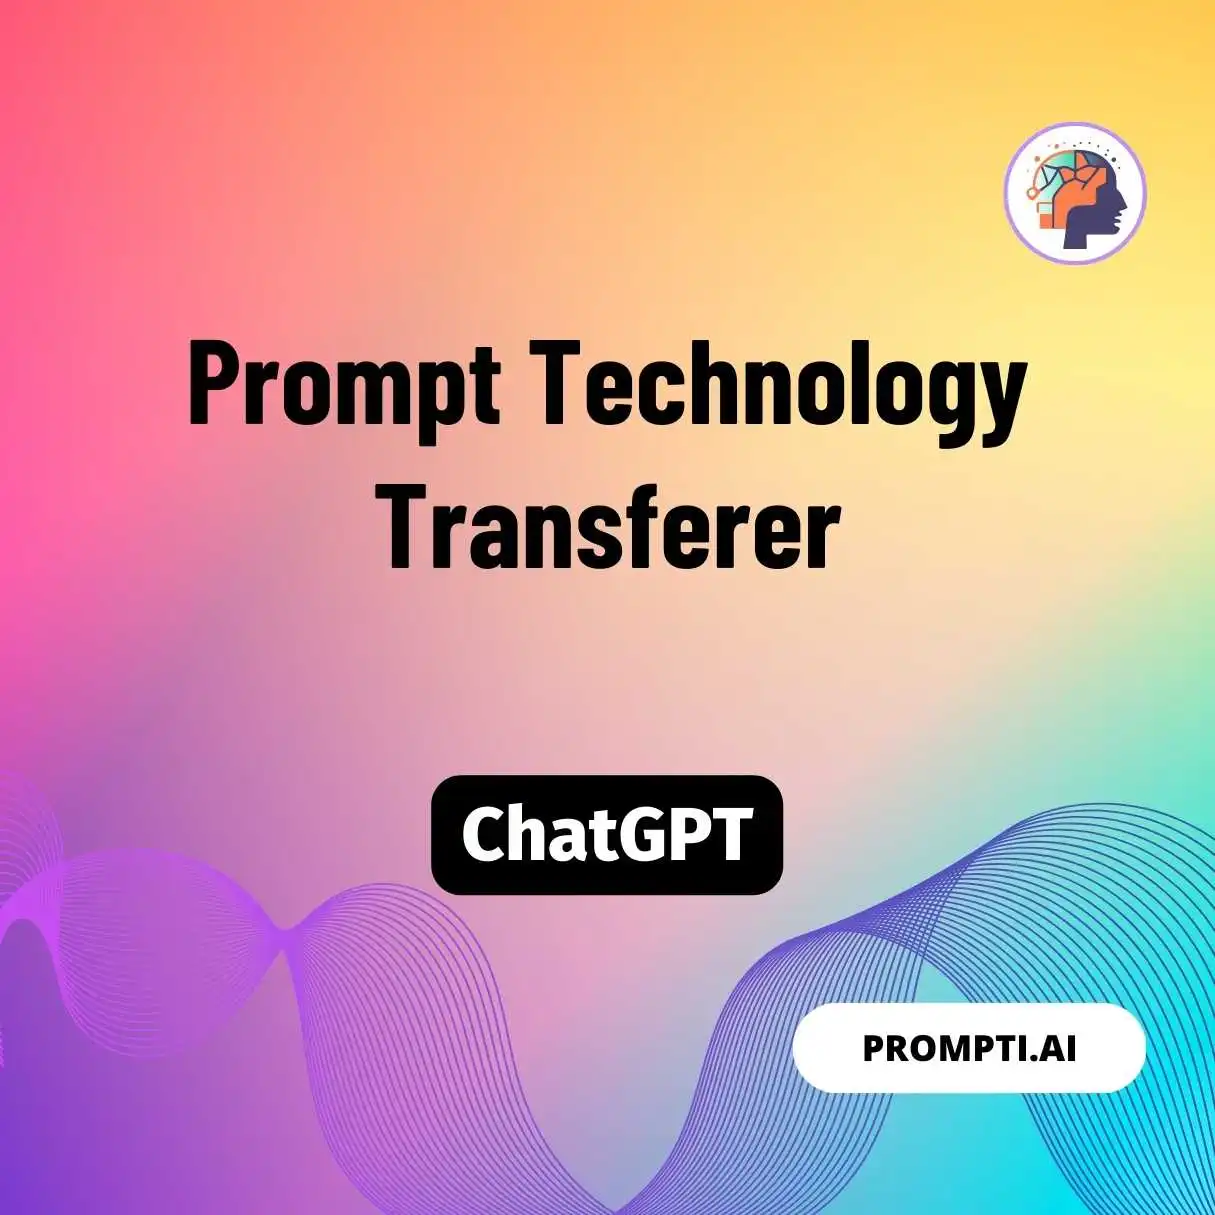 Prompt Technology Transferer